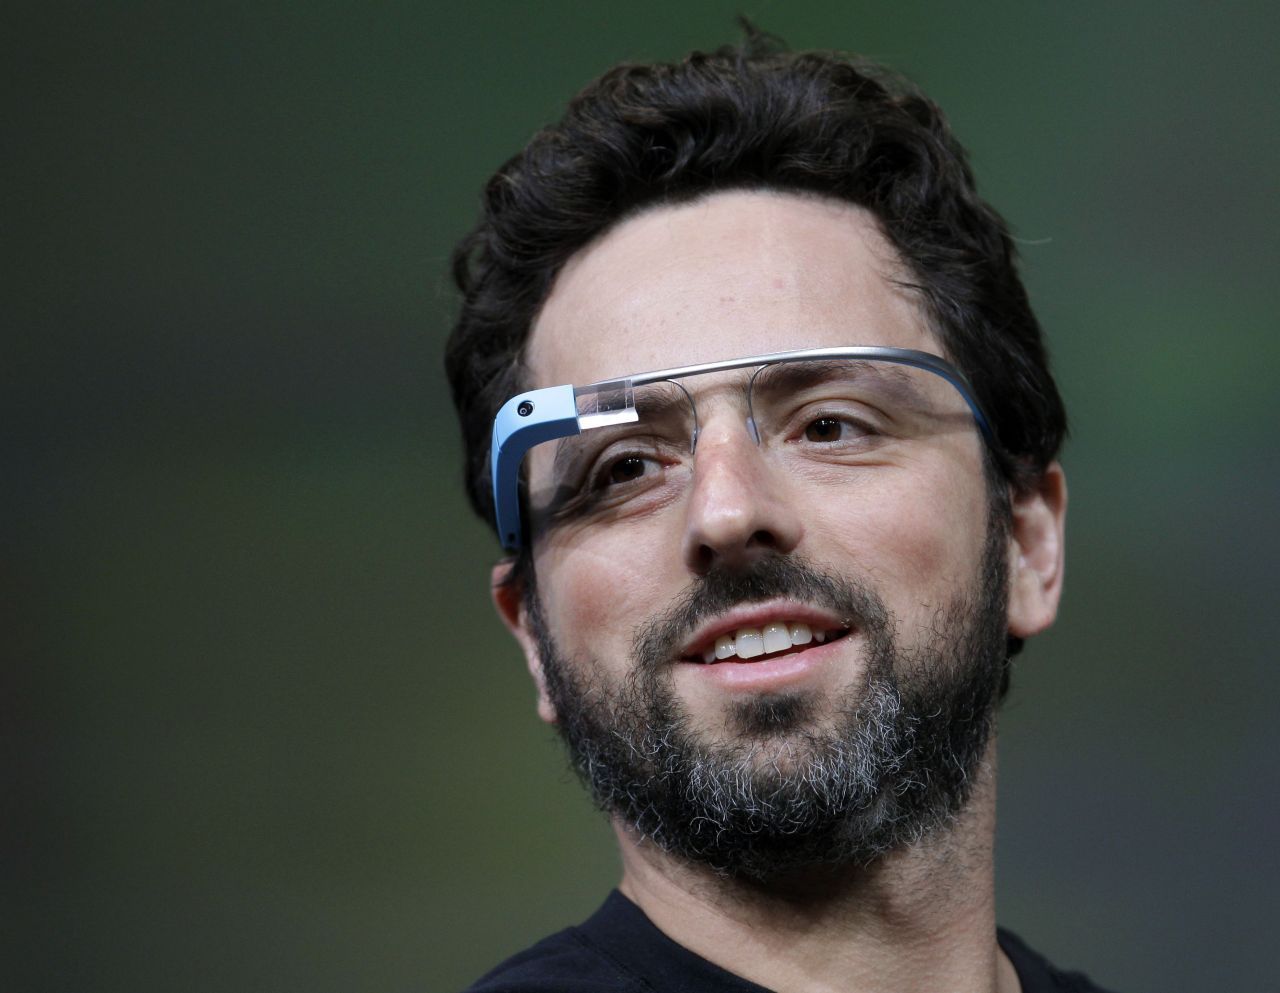 Eine Brille, auf der Informationen wie auf einem Smartphone angezeigt werden - das versprach Google Glass. Die smarte Brille wurde 2012 vorgestellt und bekam damals viel Aufmerksamkeit. Doch zum Verkaufsschlager wurde Google Glass nie.